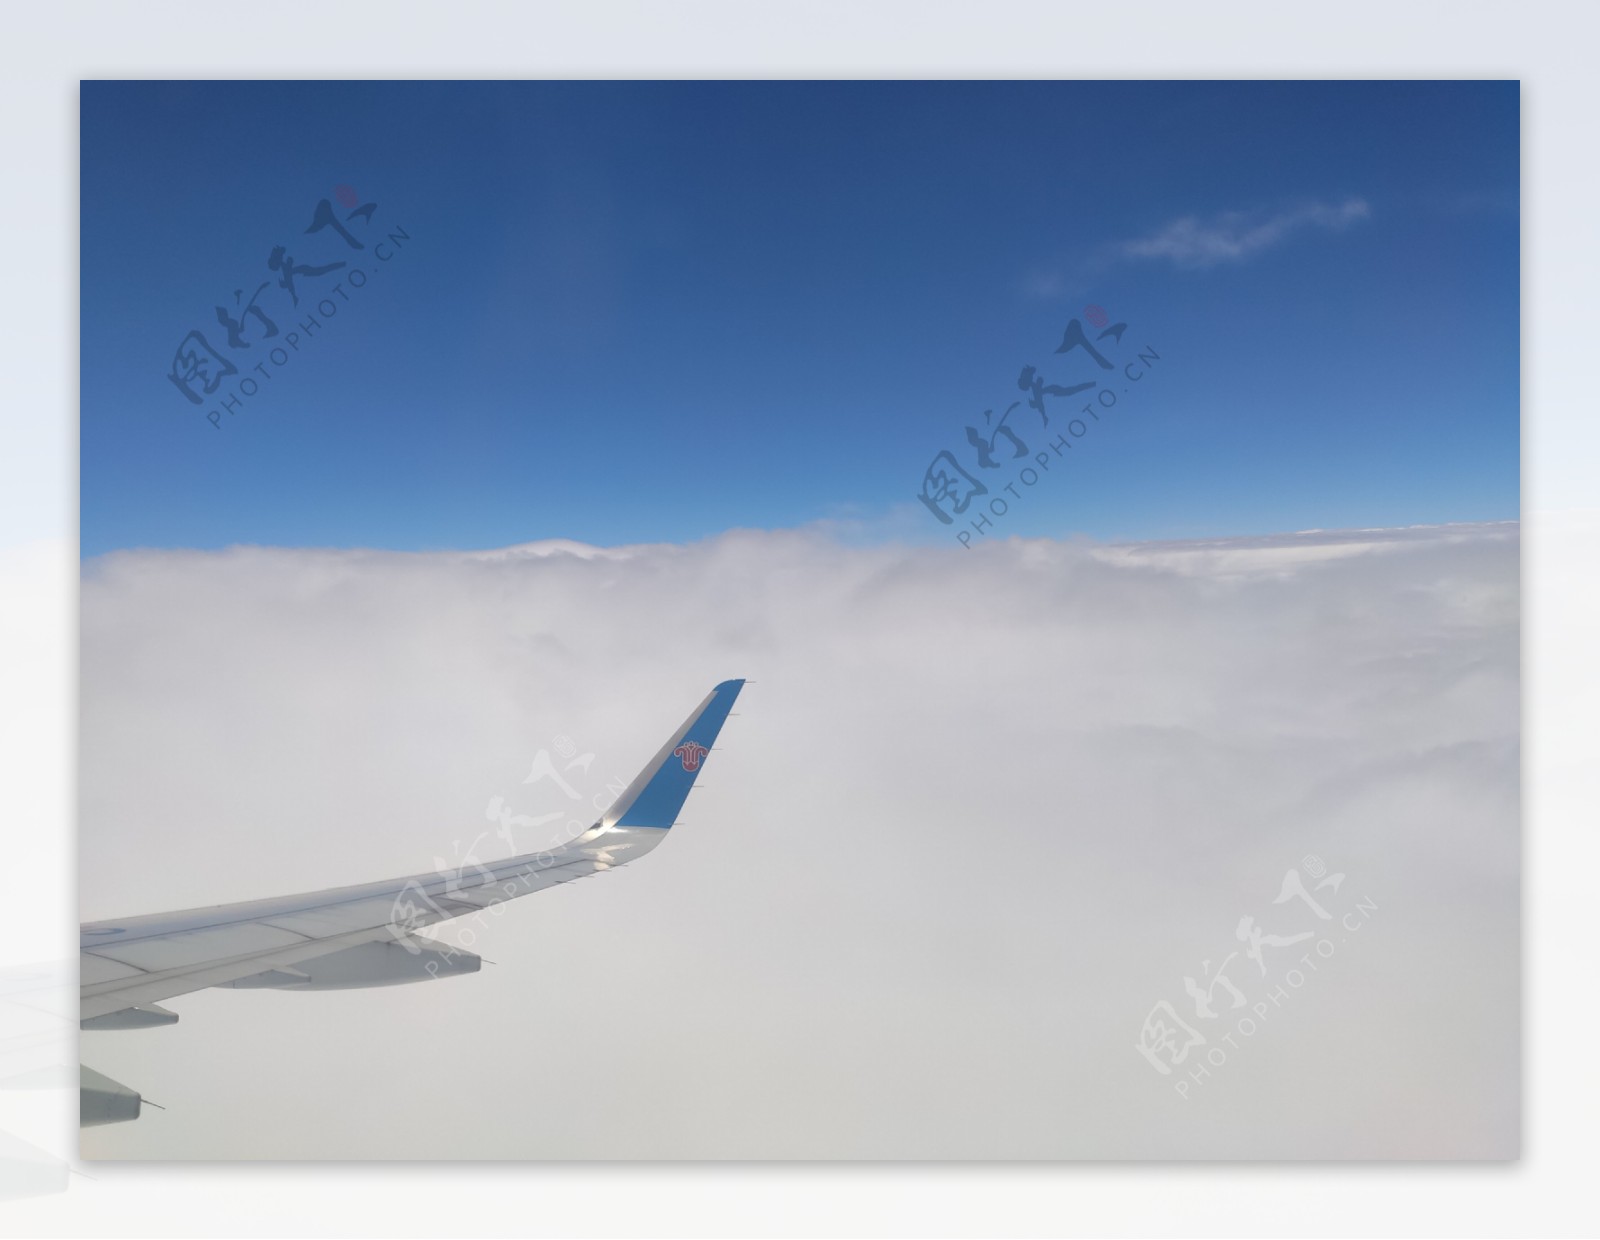 飞机上的云